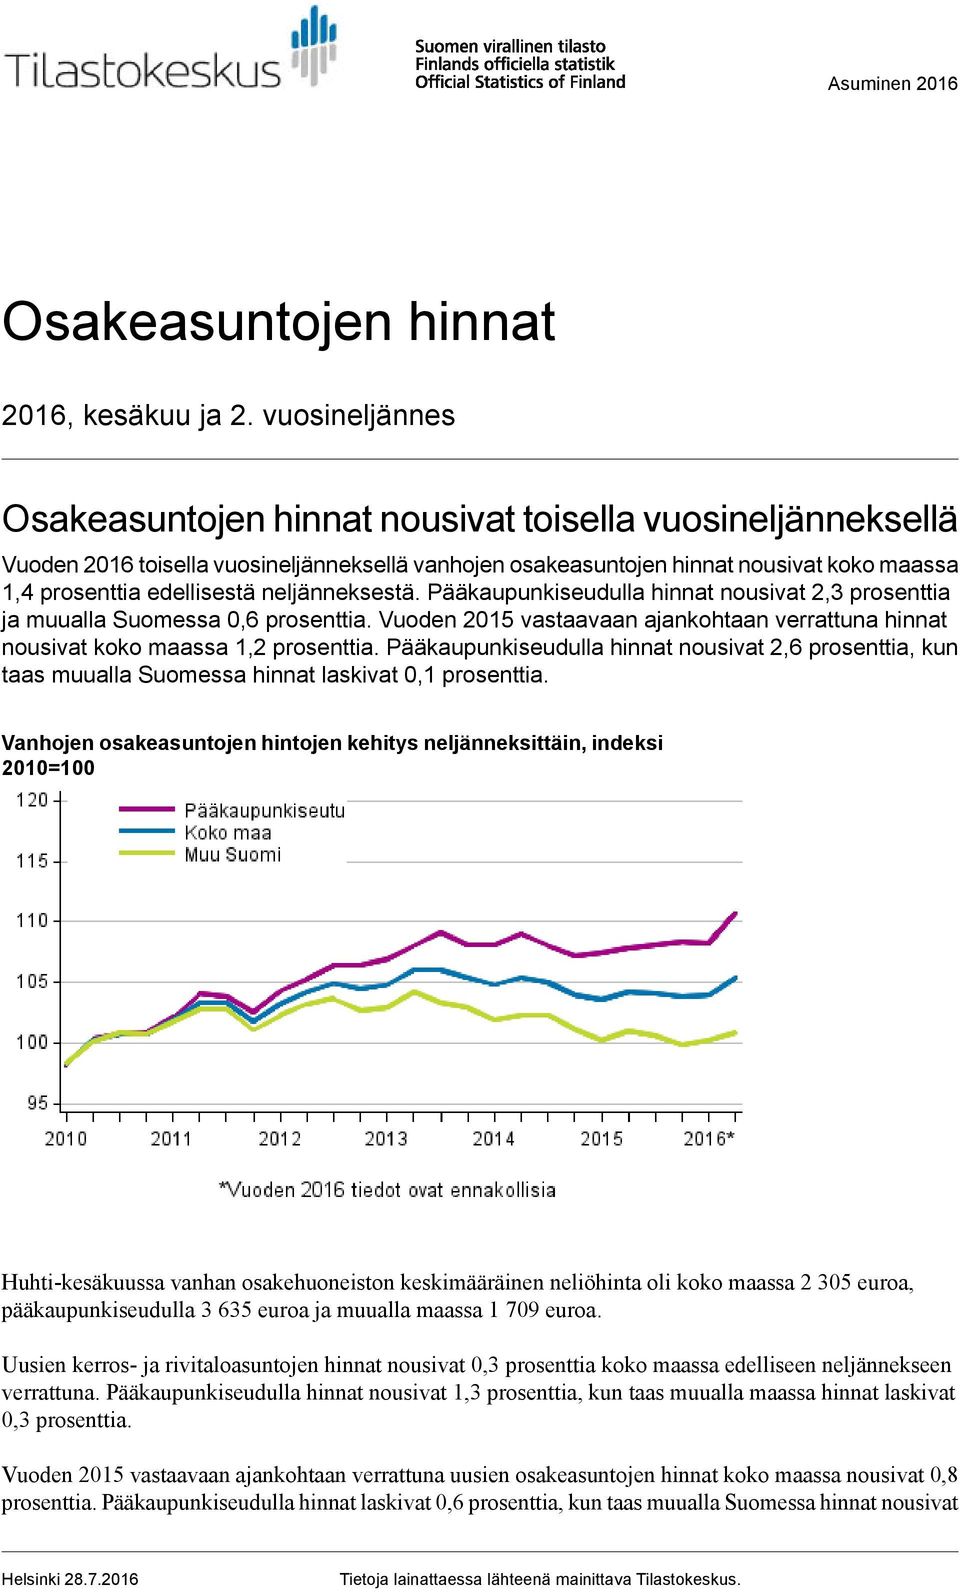 neljänneksestä. Pääkaupunkiseudulla hinnat nousivat 2,3 prosenttia ja muualla Suomessa 0,6 prosenttia. Vuoden 2015 vastaavaan ajankohtaan verrattuna hinnat nousivat koko maassa prosenttia.